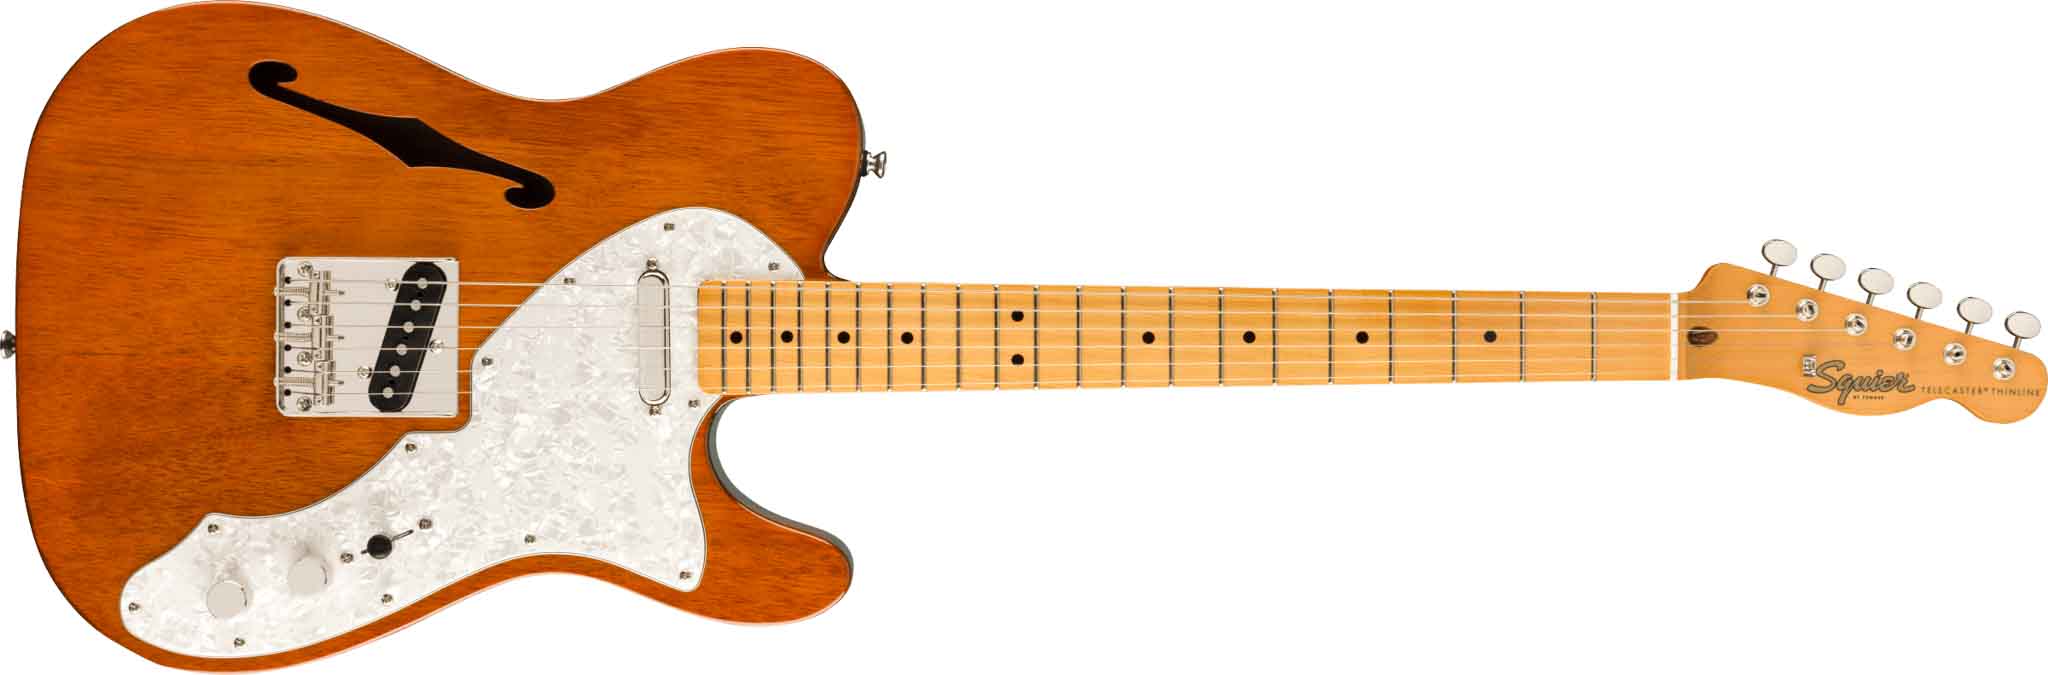 Fender Squier Classic Vibe '60s Custom Telecaster Thinline elektrisk gitar